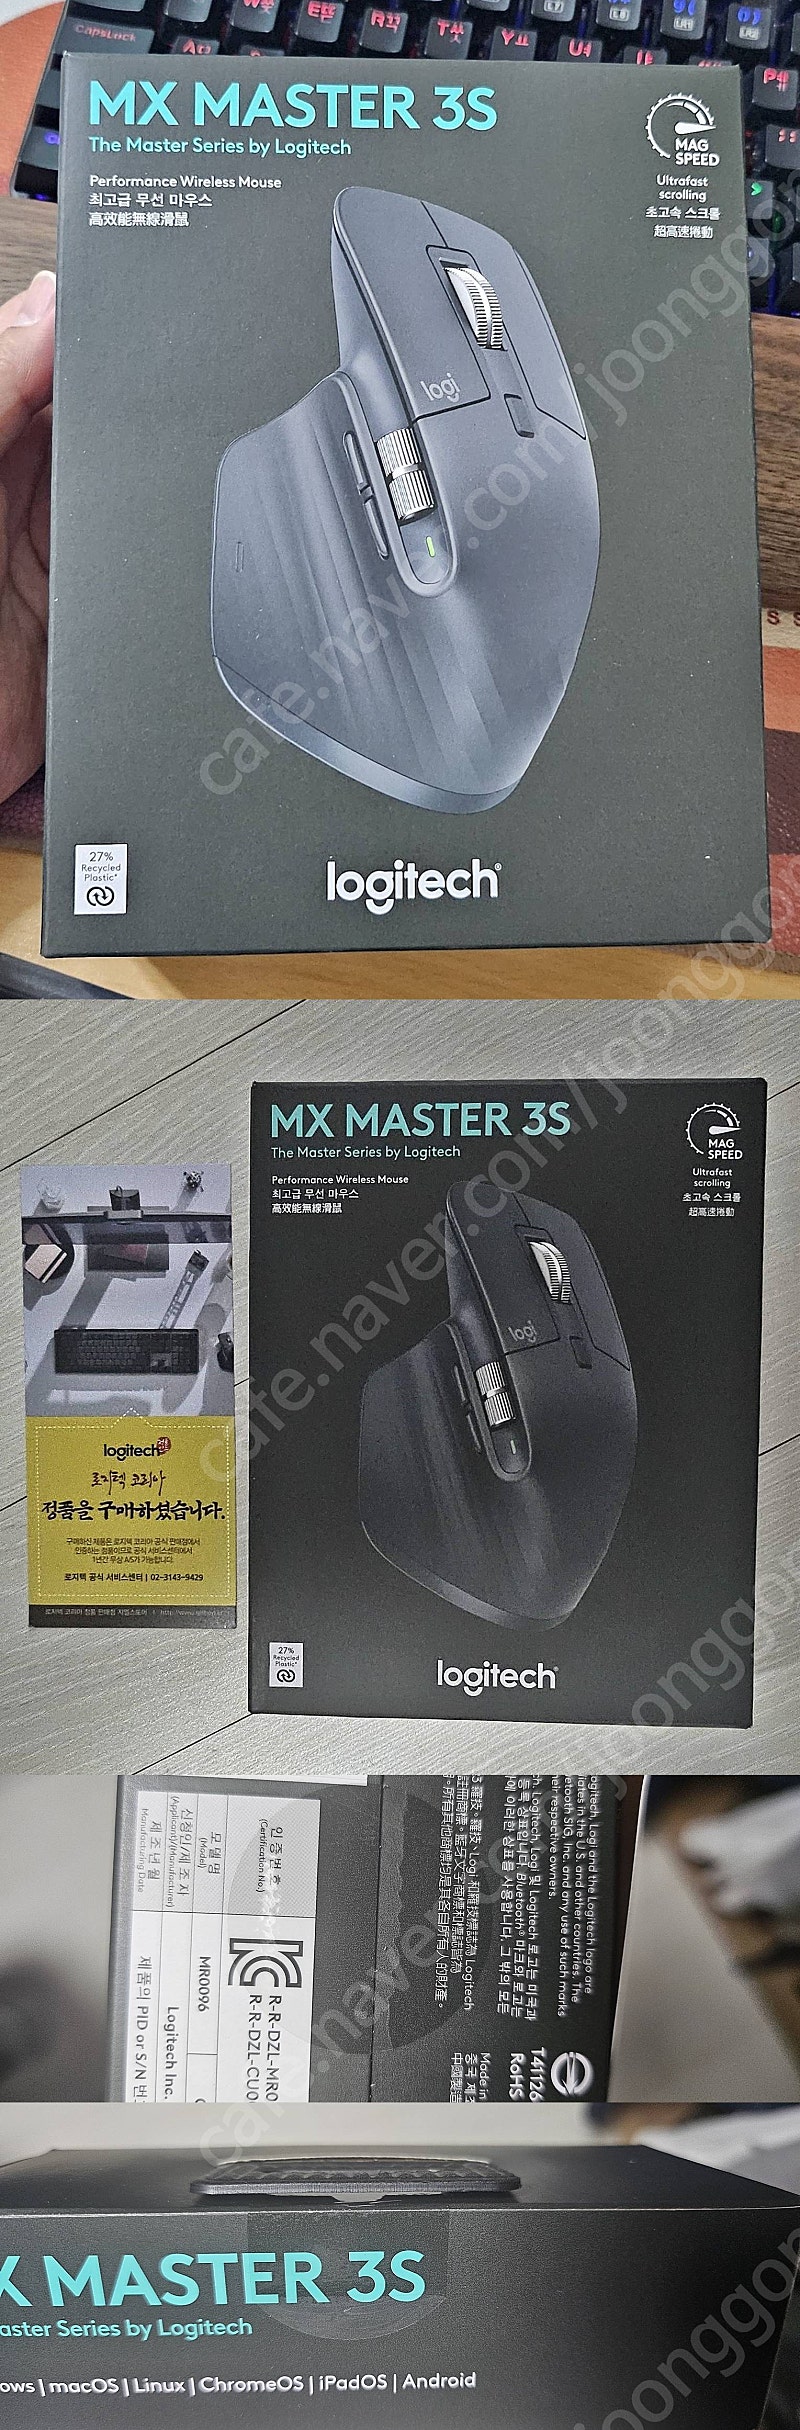 국내정발 로지텍 MX MASTER 3S 미개봉 팝니다.